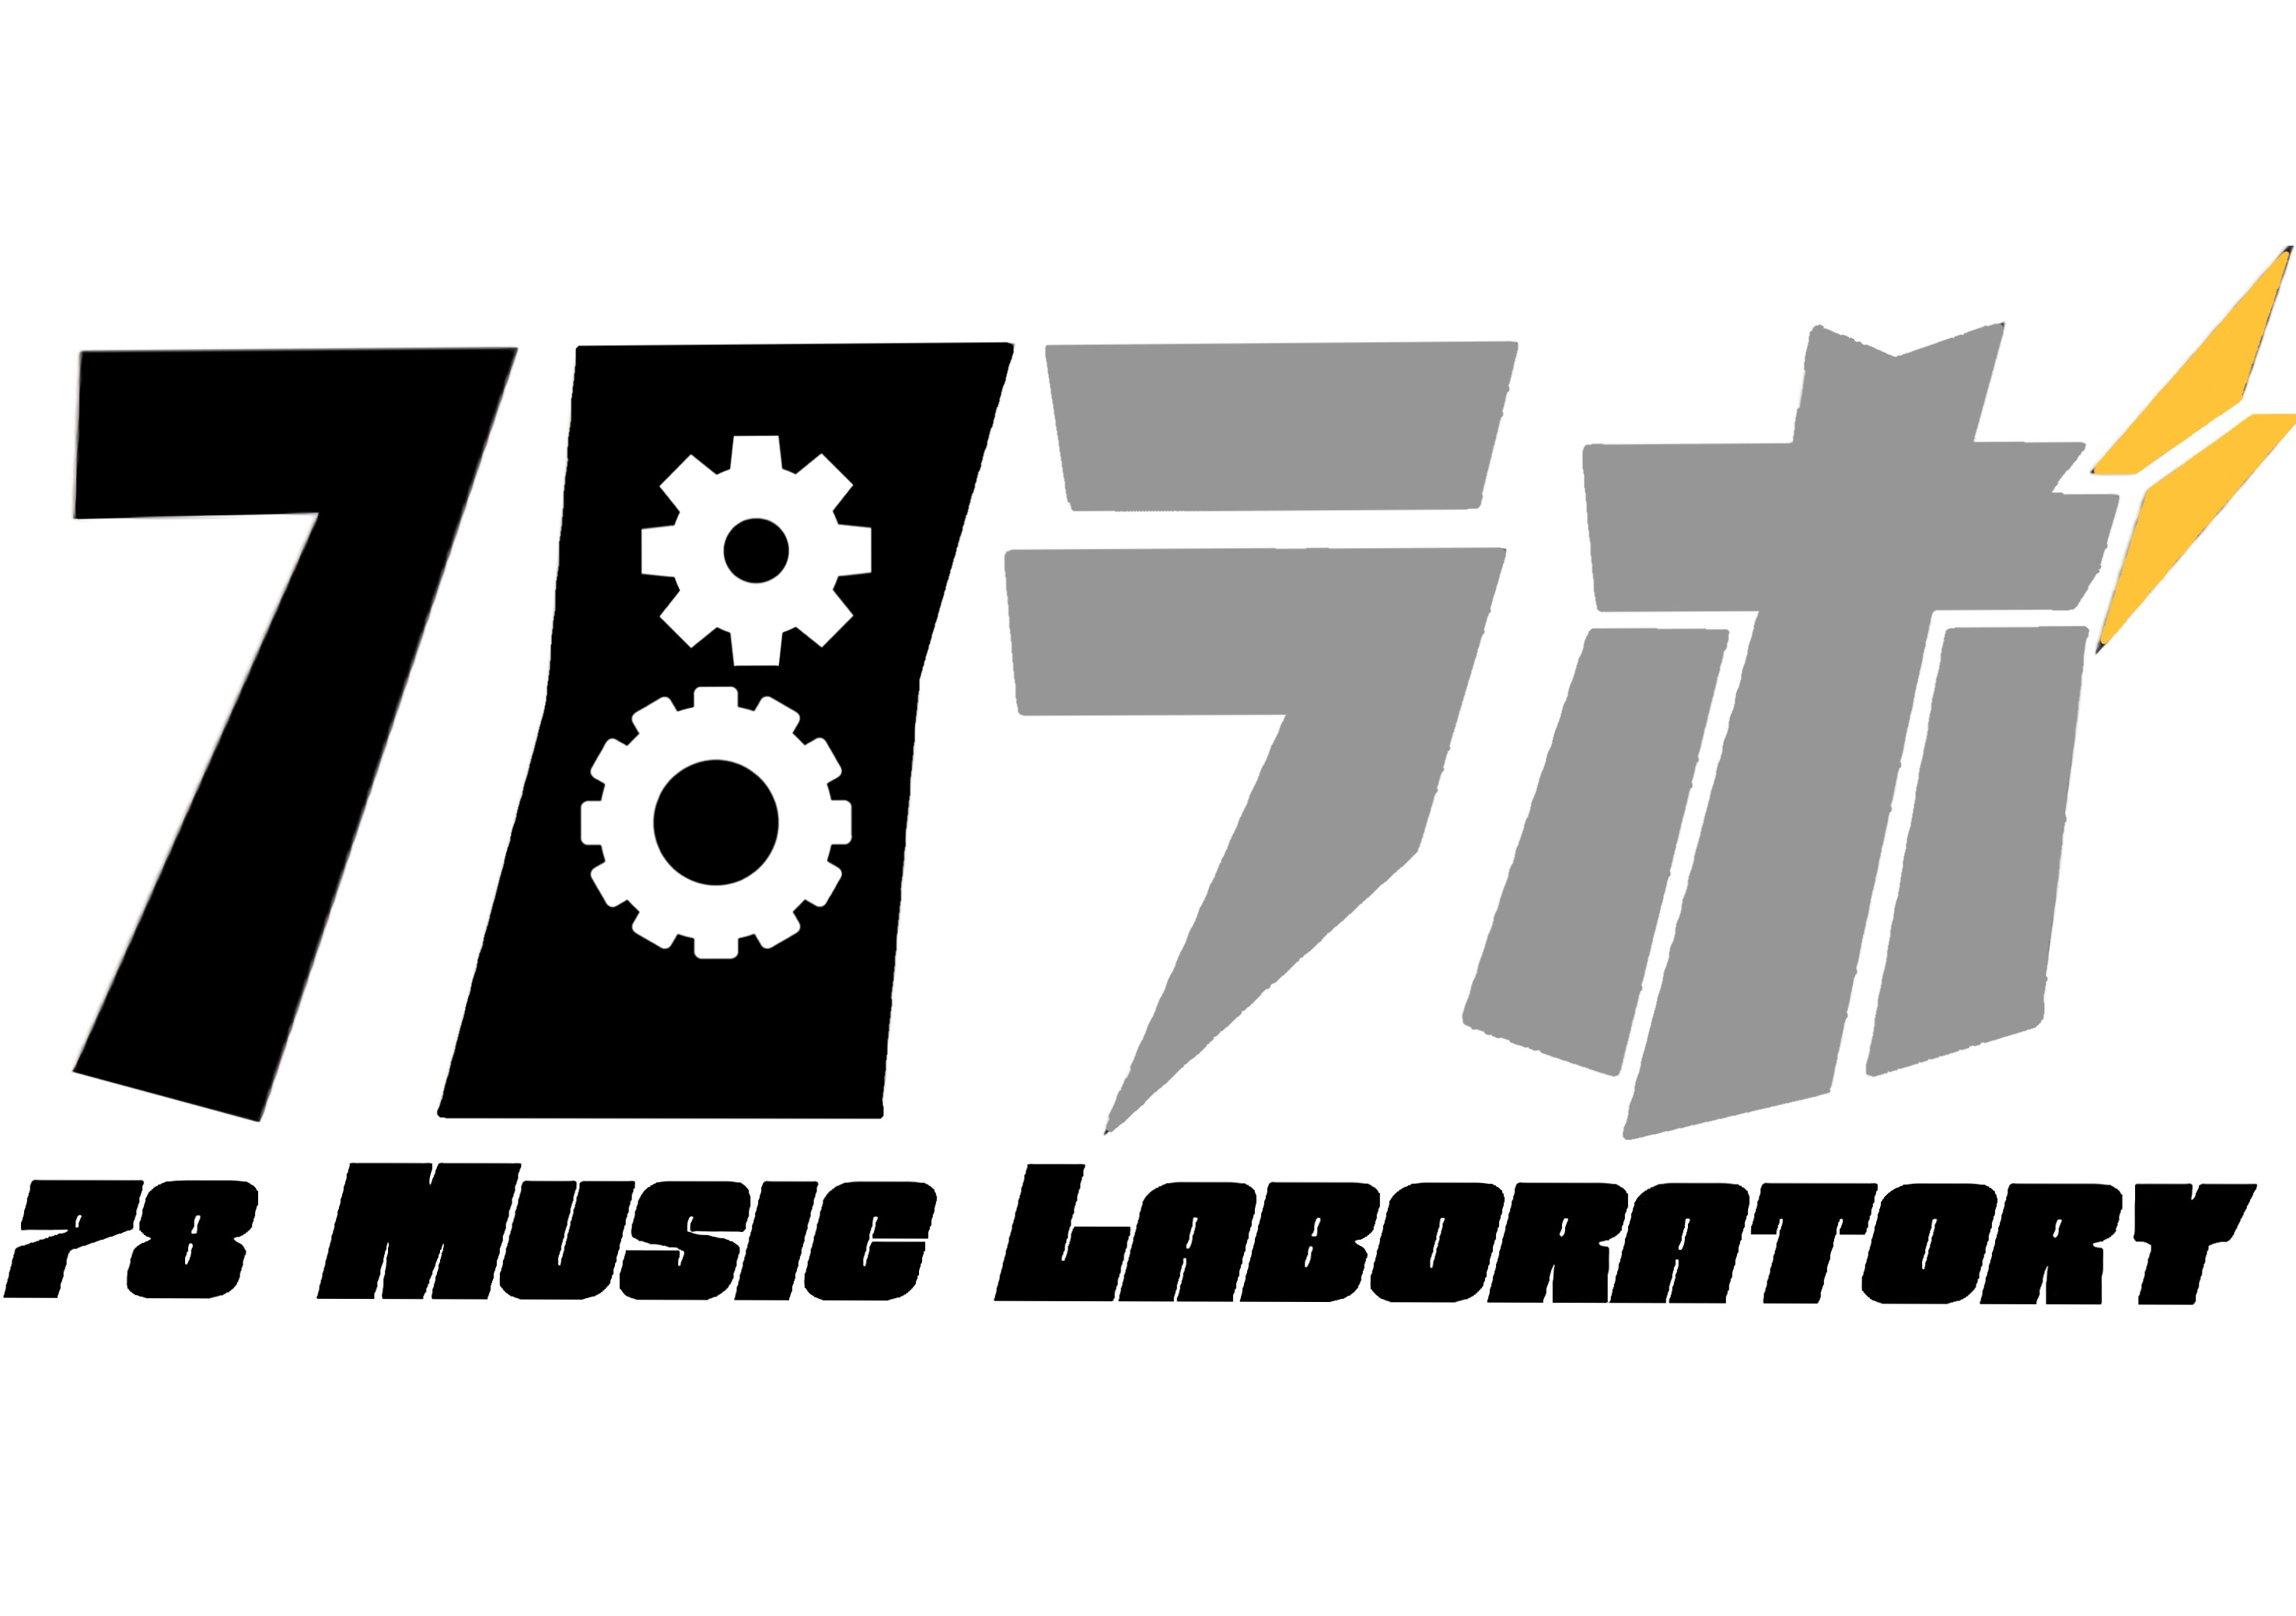 【新番組情報】78 Music Laboratory